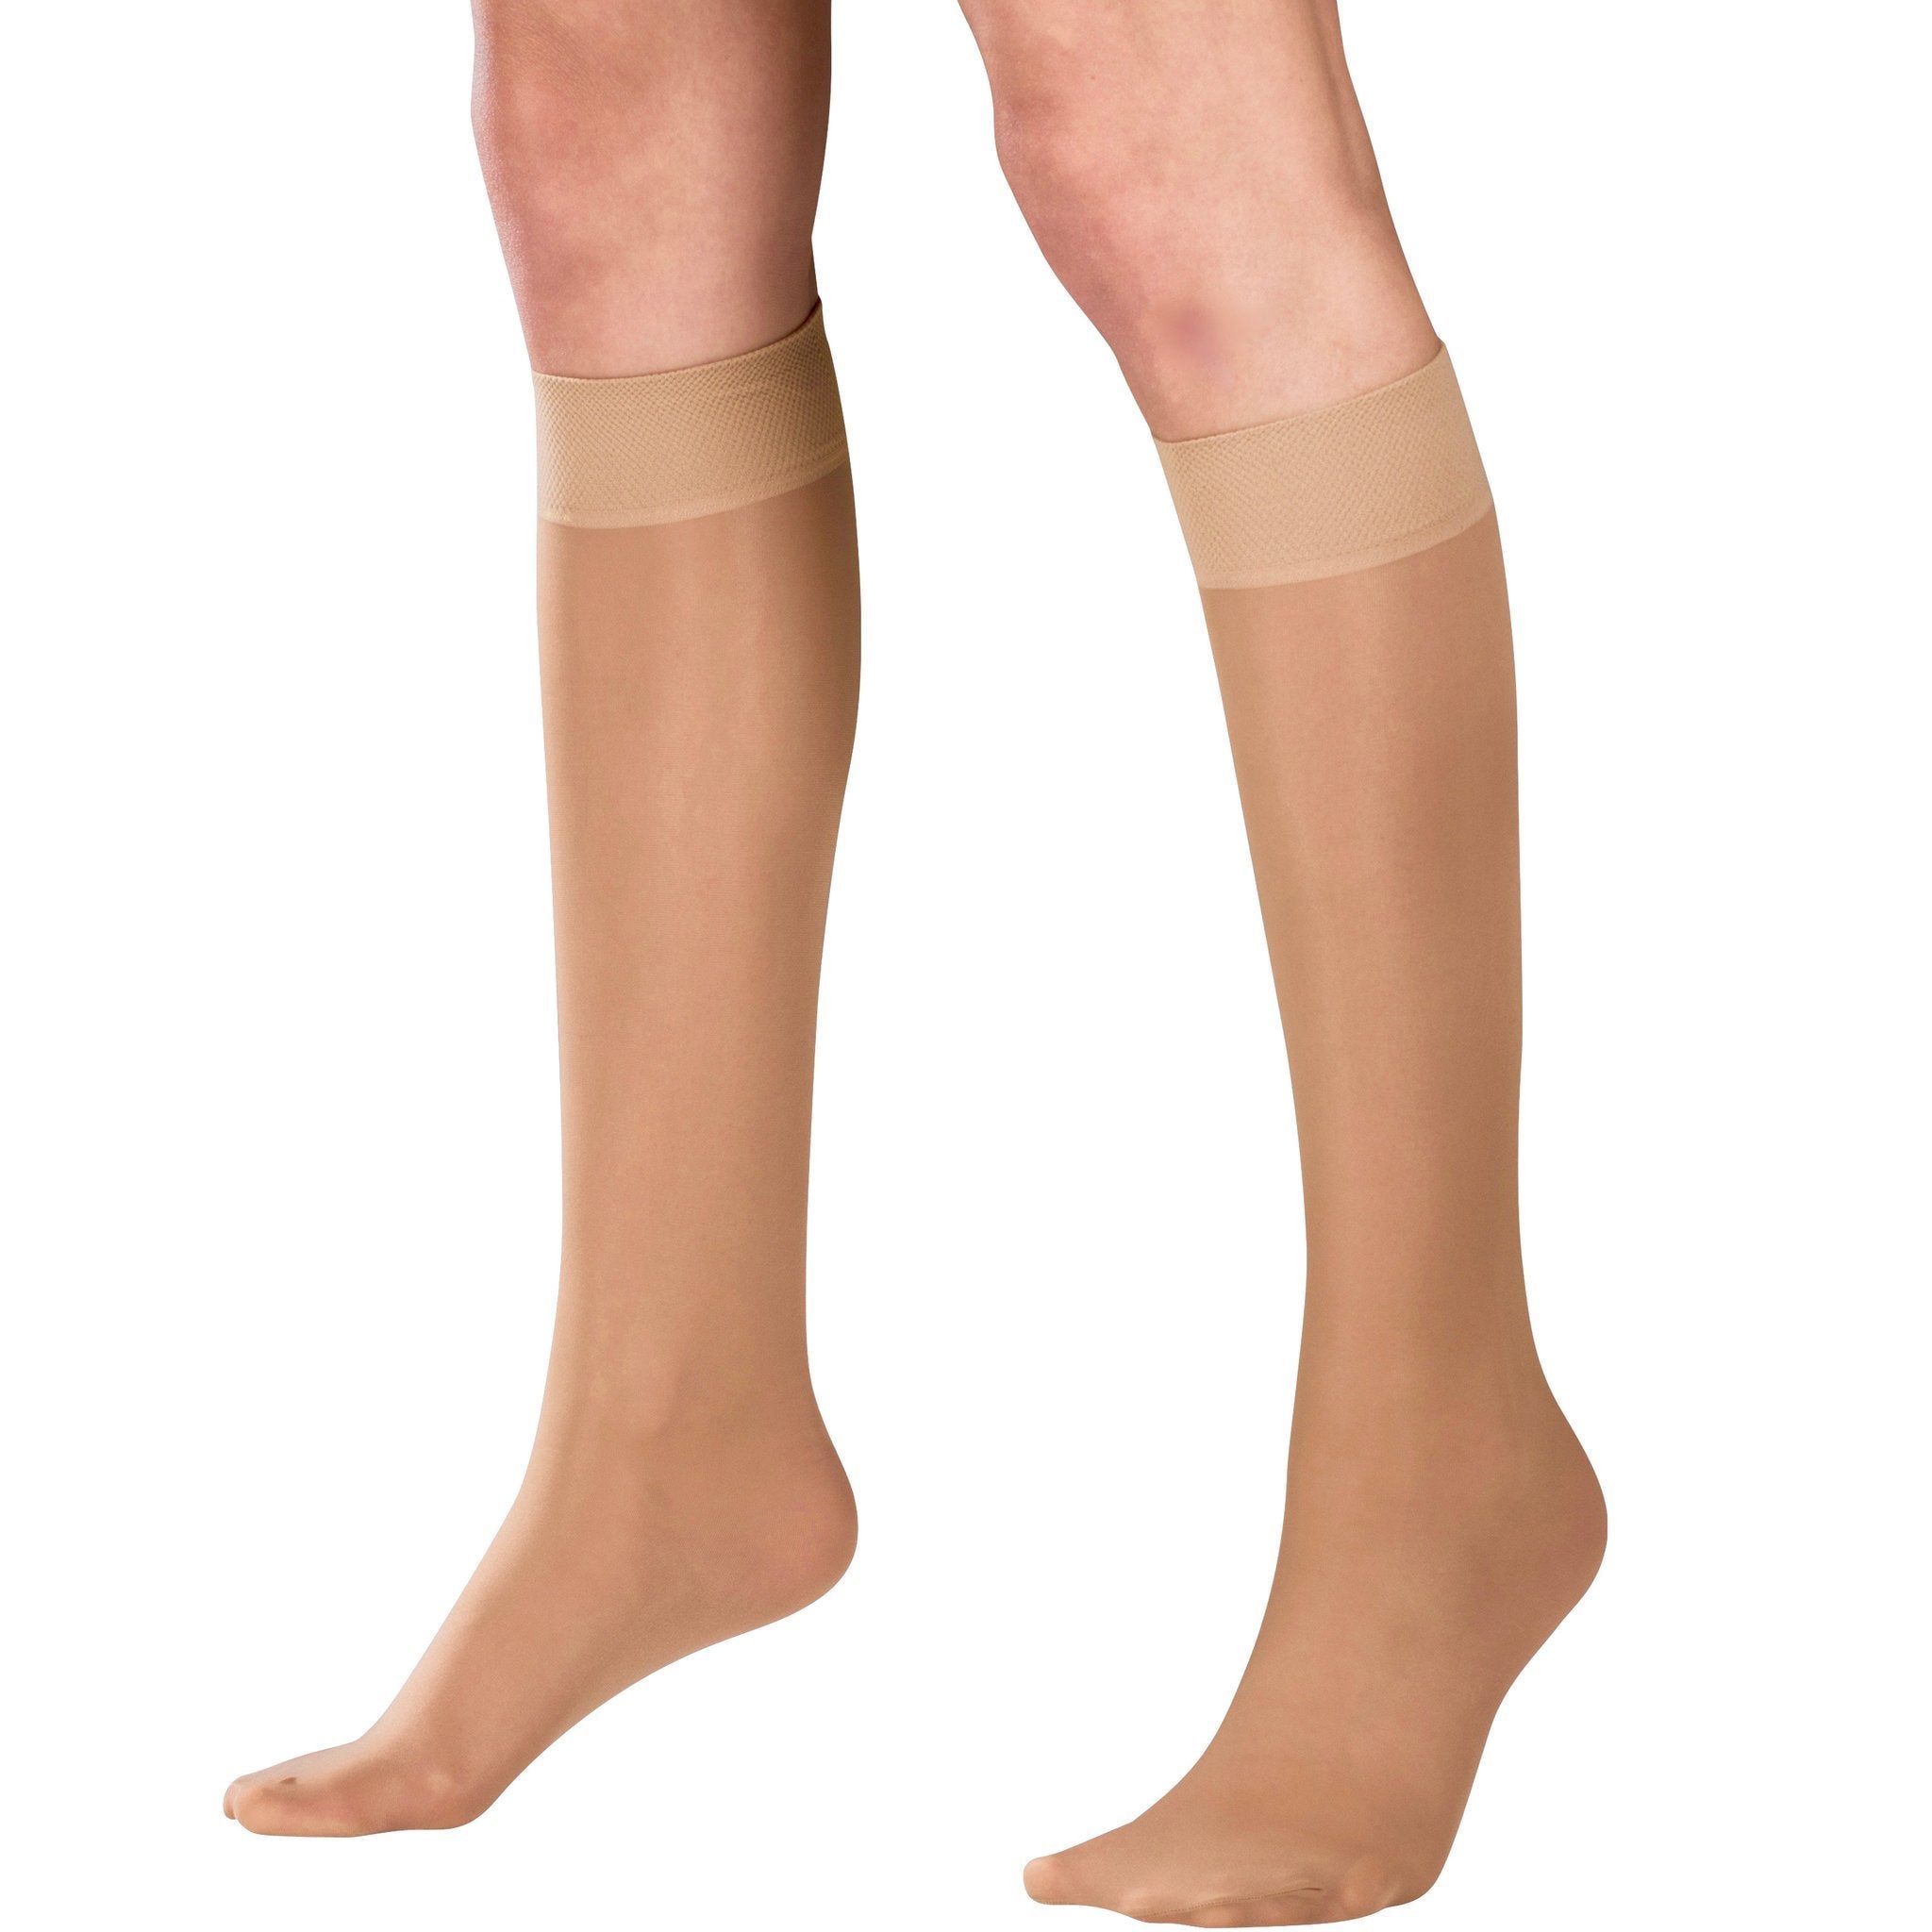 Truform Women's Stockings, Knee High, Sheer: 30-40 mmHg, Black